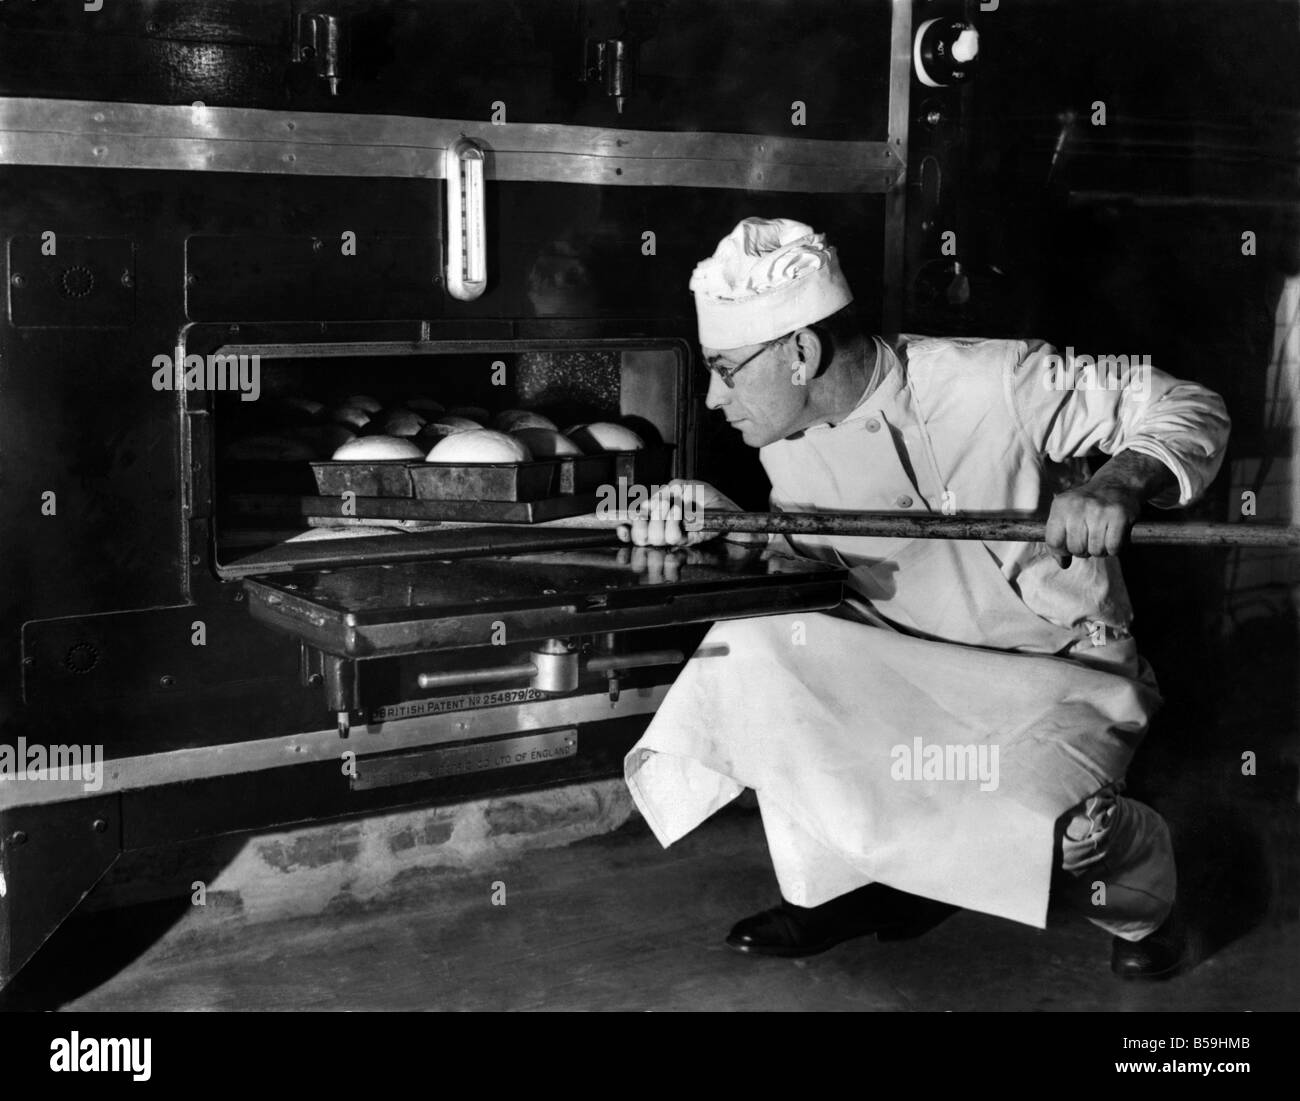 The Bakery School at Ashton. January 1950 P008047 Stock Photo